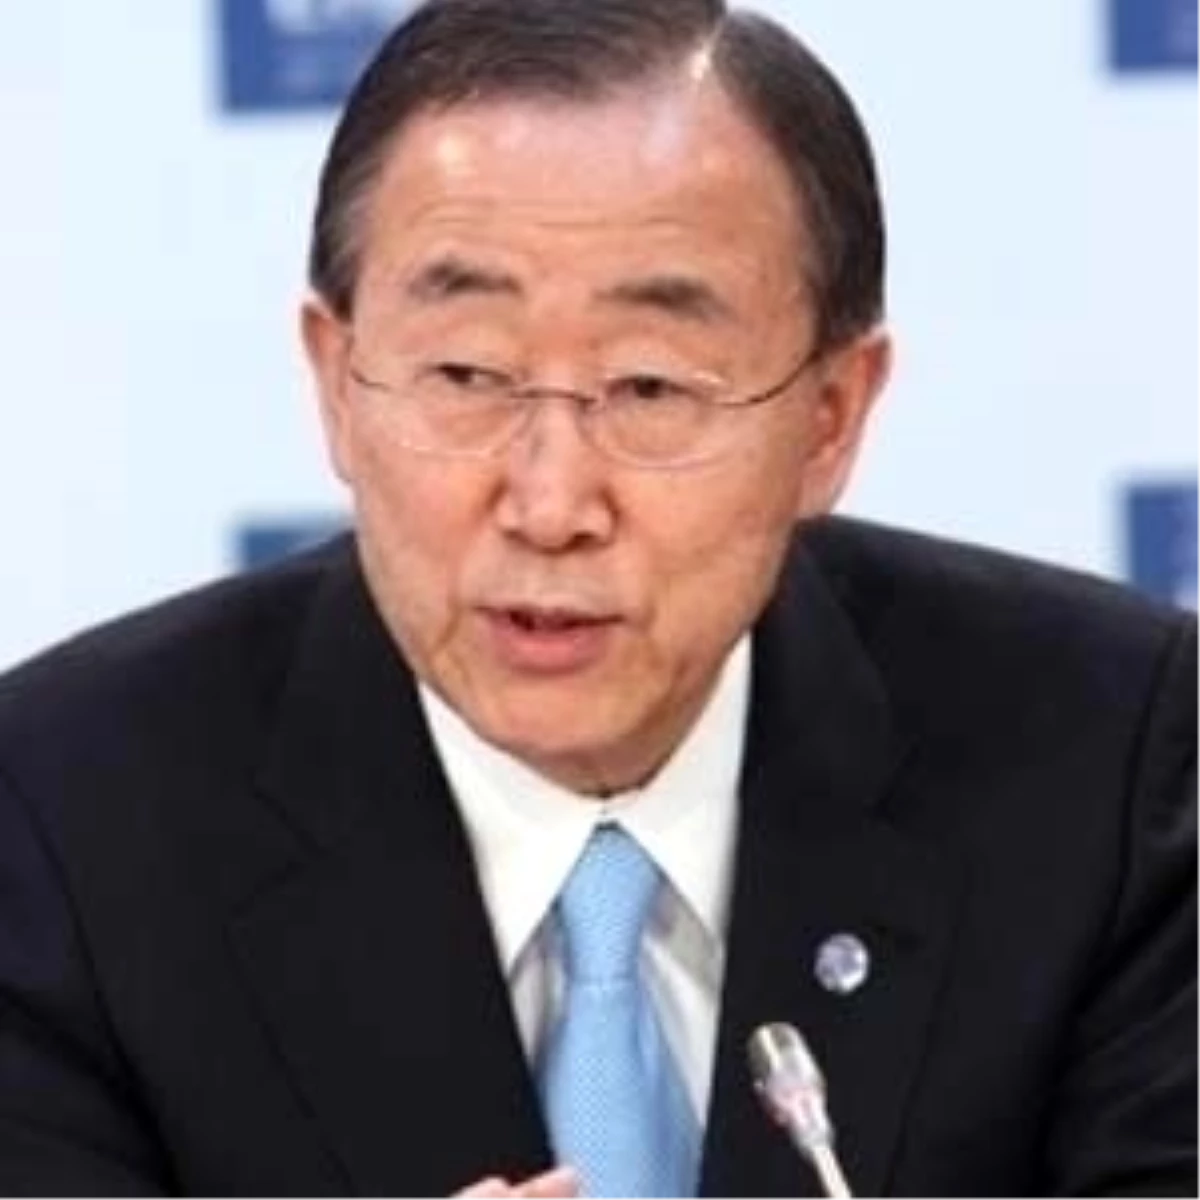 BM Genel Sekreteri Ban Ki-mun, Kıbrıs Müzakerelerini Değerlendiren Son Raporunu Açıkladı